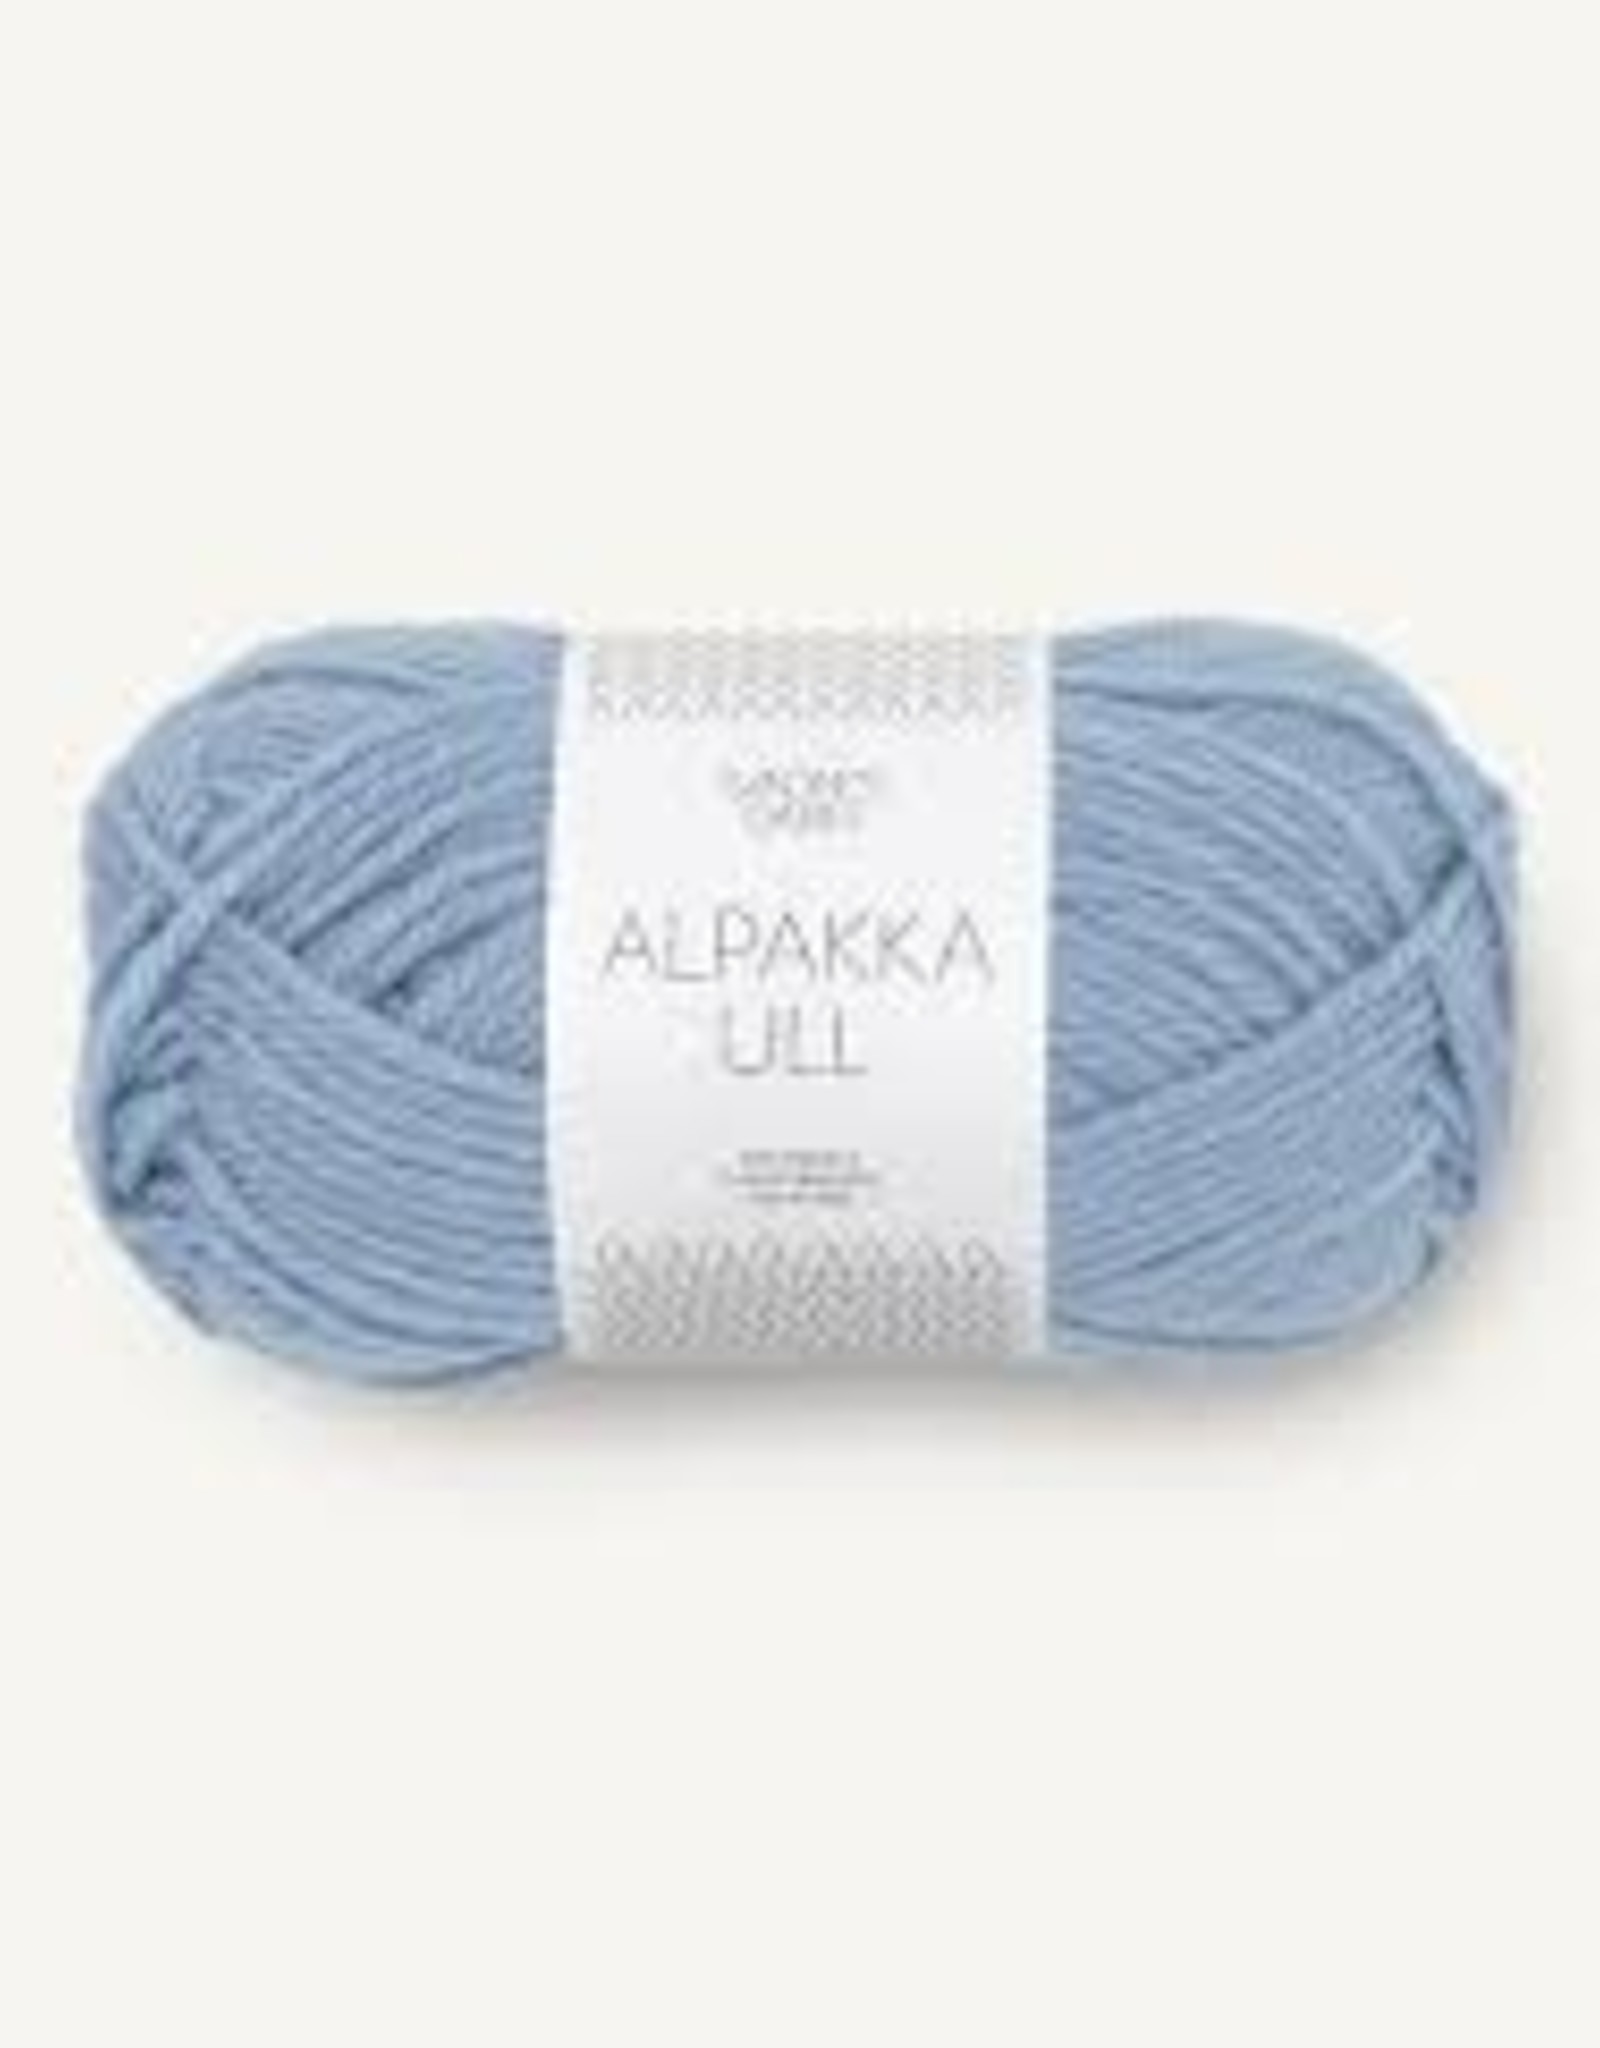 Sandnes Garn Alpakka Ull 6032 blue hortensia